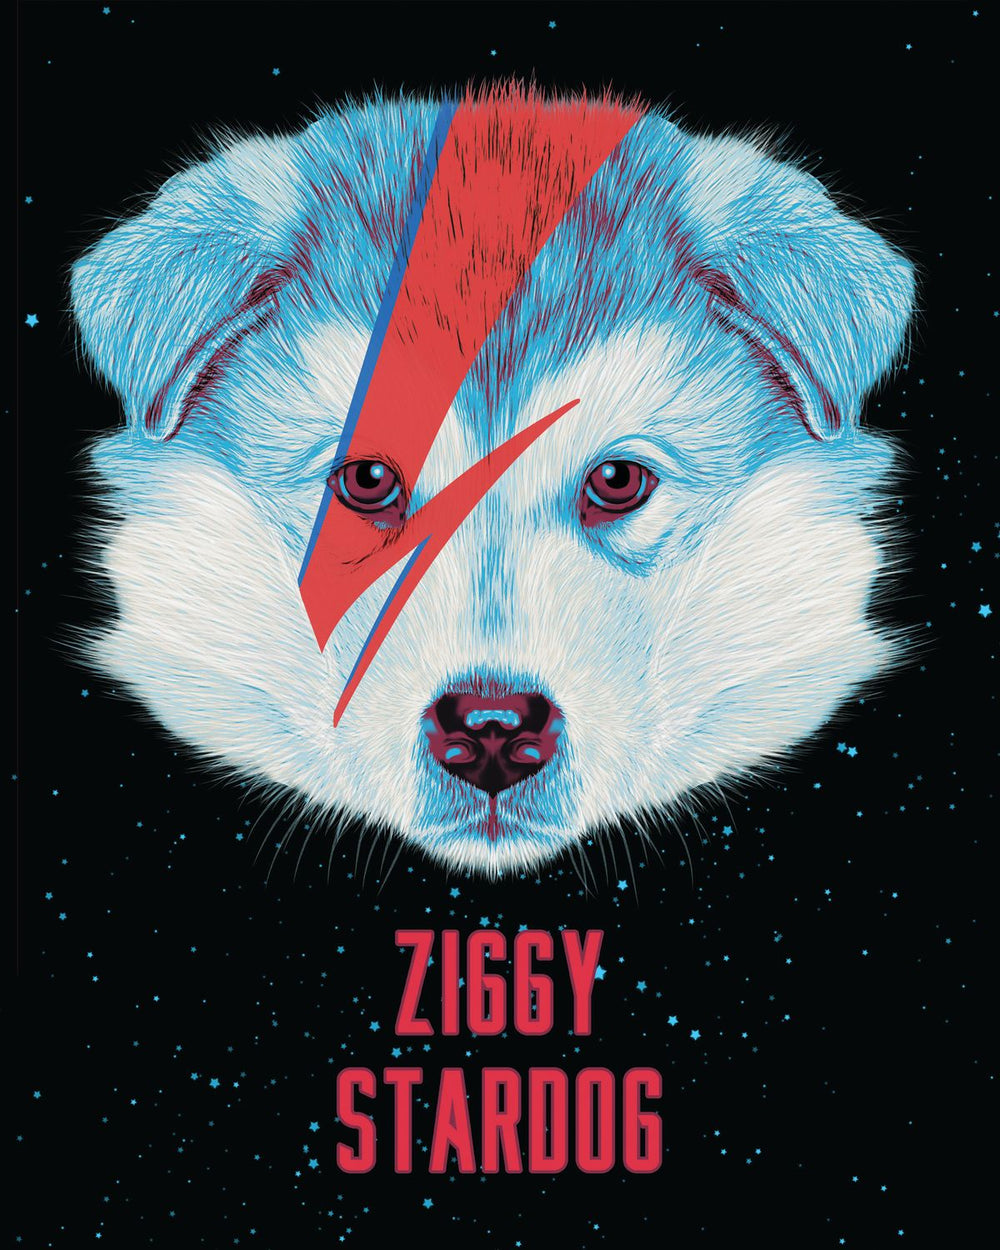 Ziggy Stardog